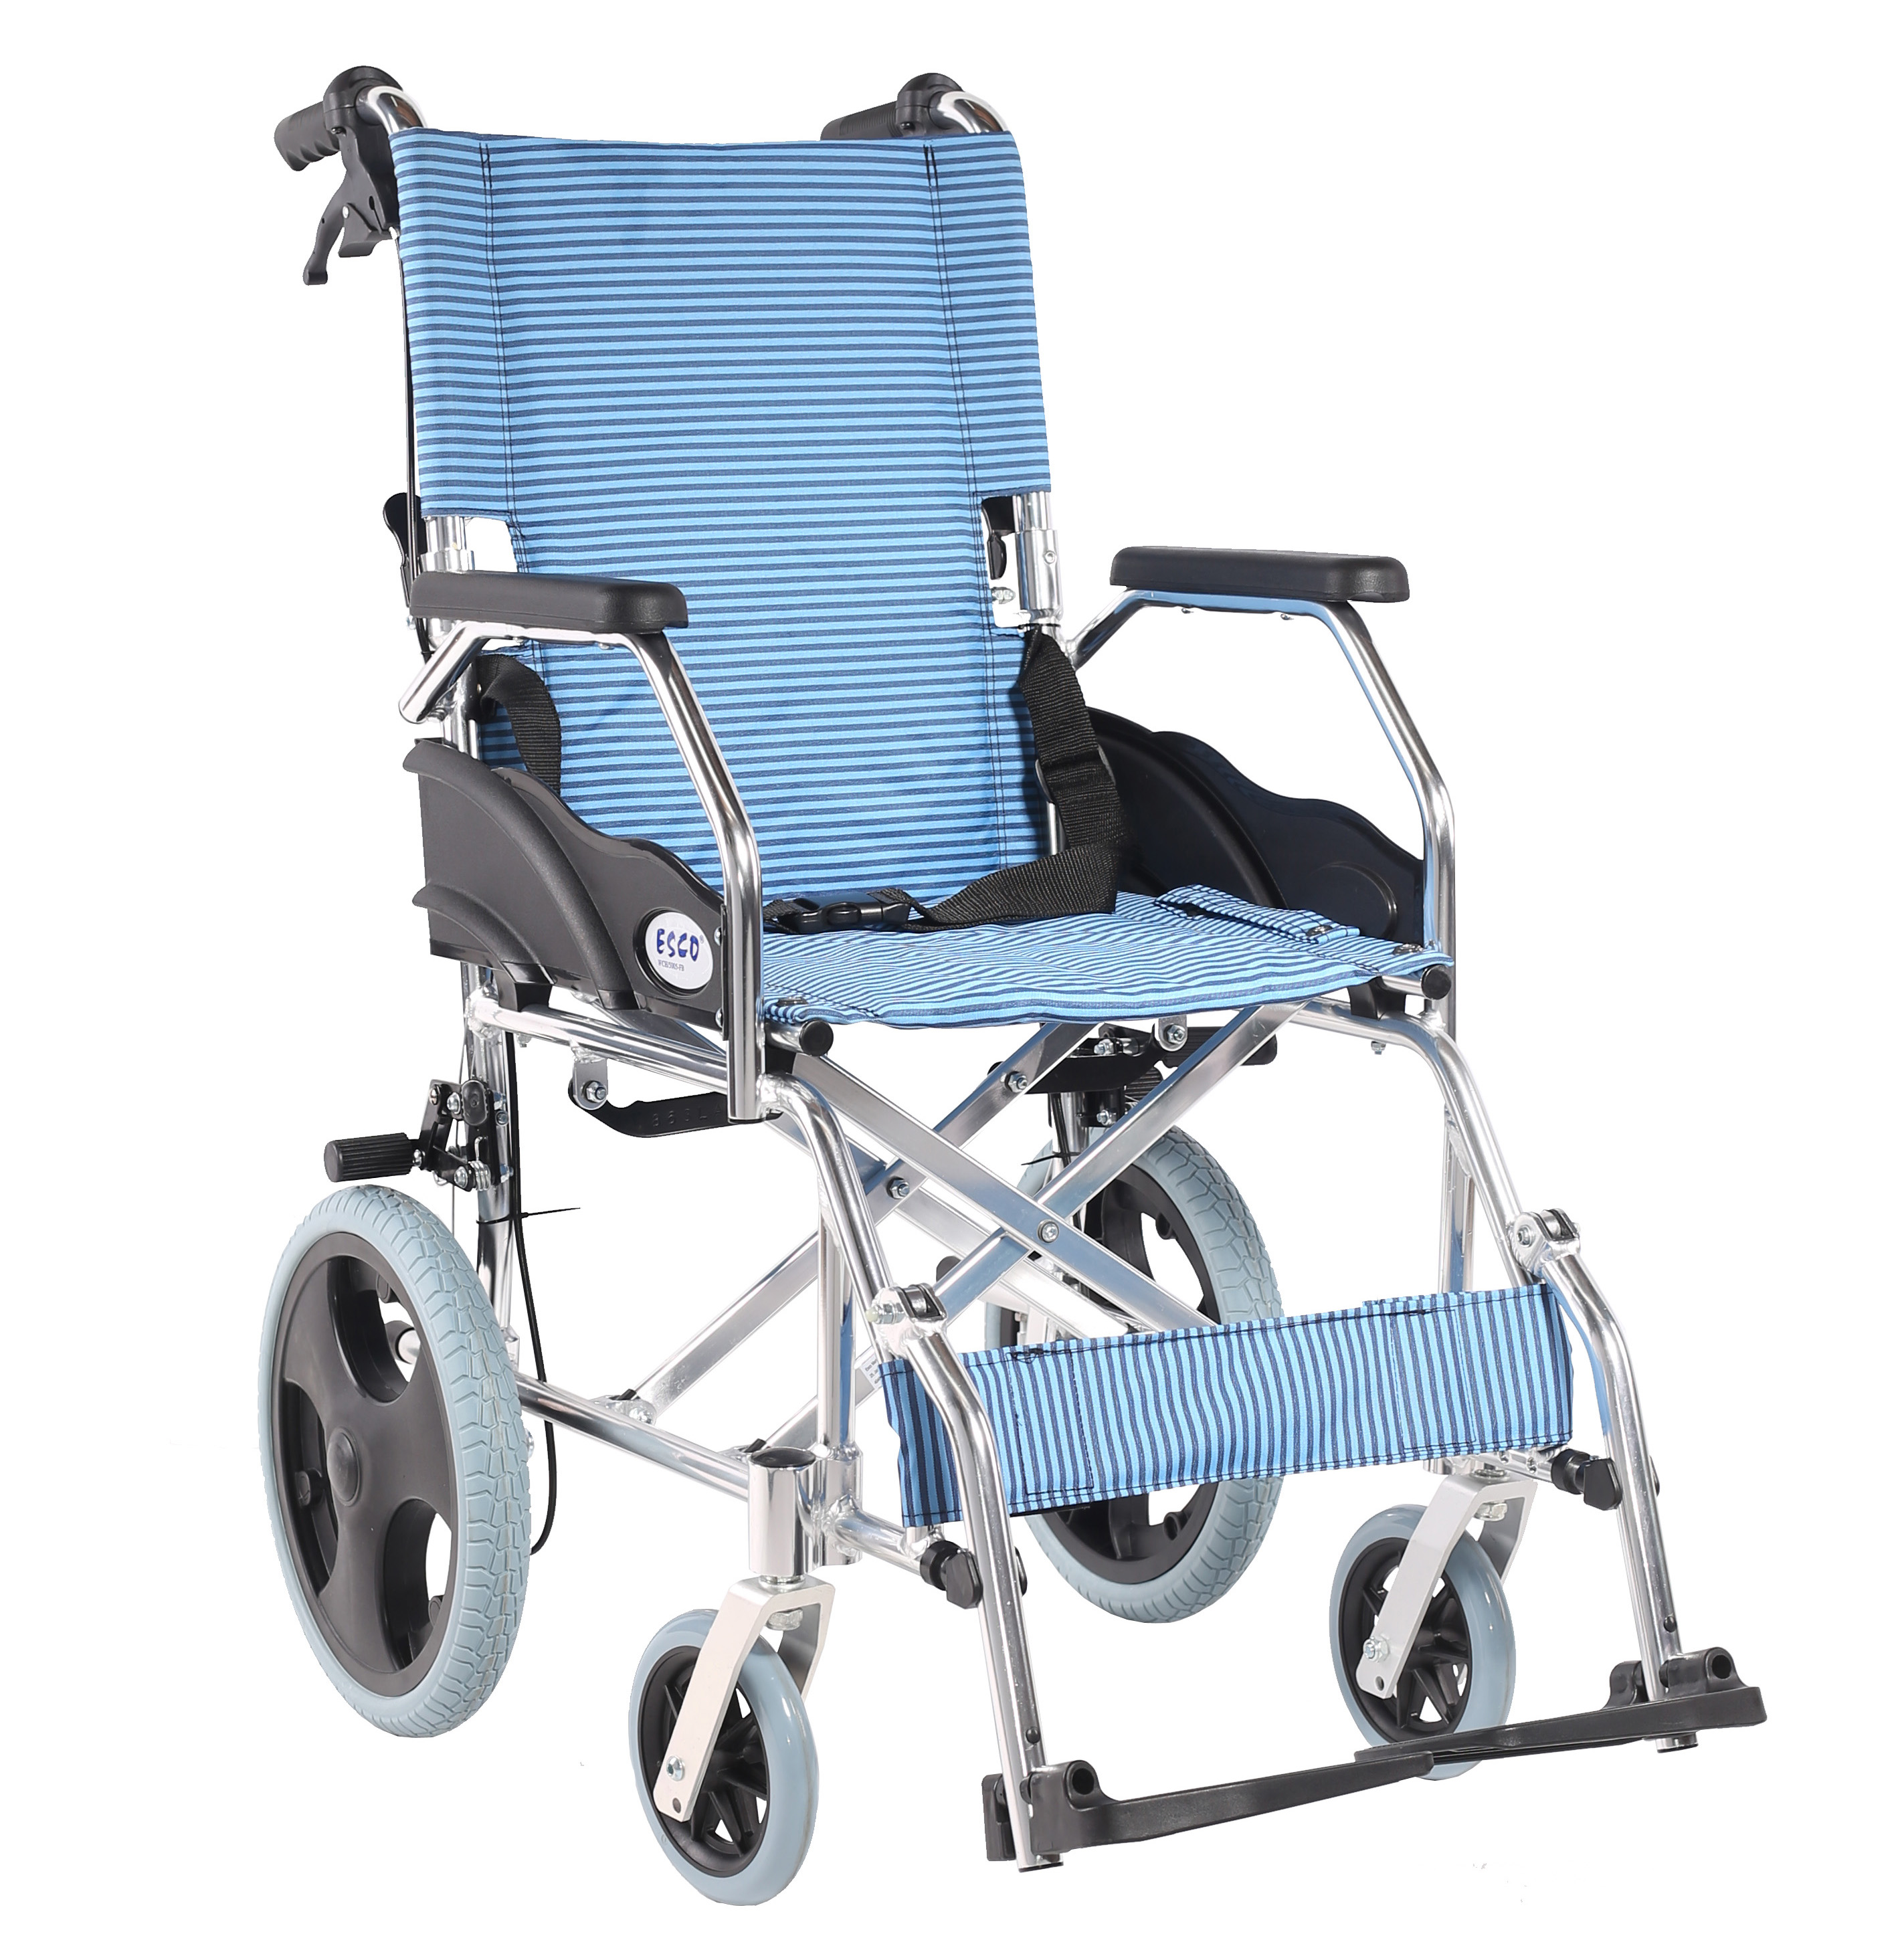 Wheelchair Lightweight for Travel, 8kg. - Philippine Medical Supplies